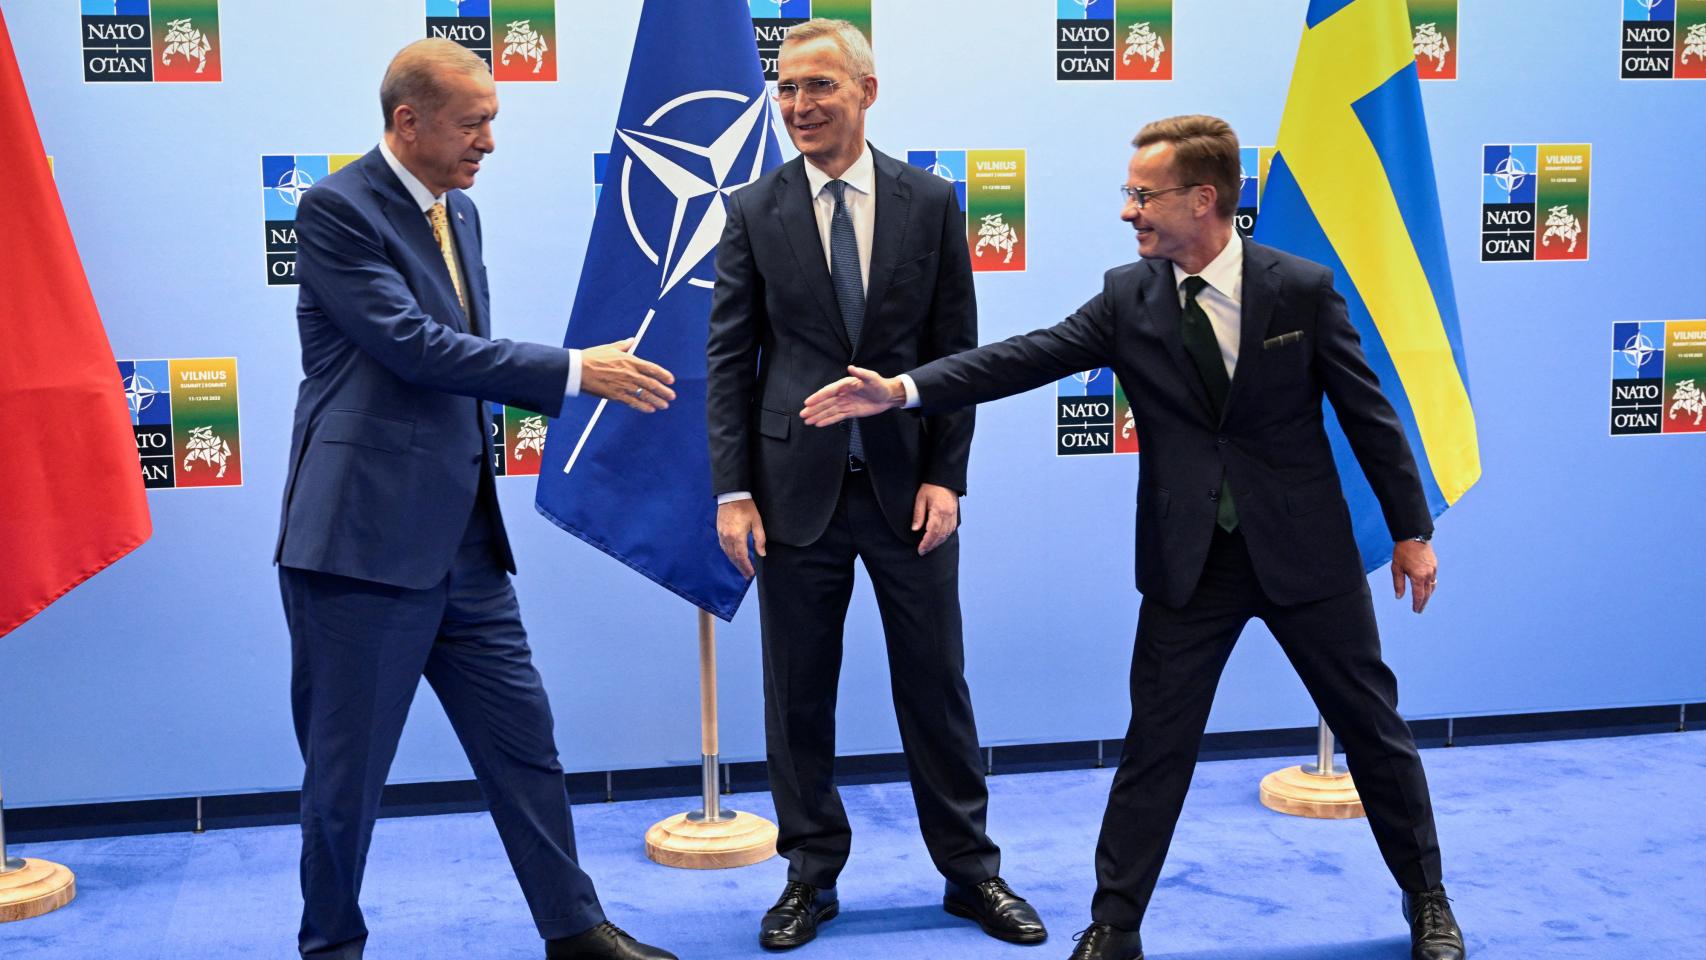 El presidente turco, Erdogan , y el primer ministro sueco, Kristersson, se dan la mano junto al secretario general de la OTAN, Stoltenberg, antes de su reunión en Vilna.